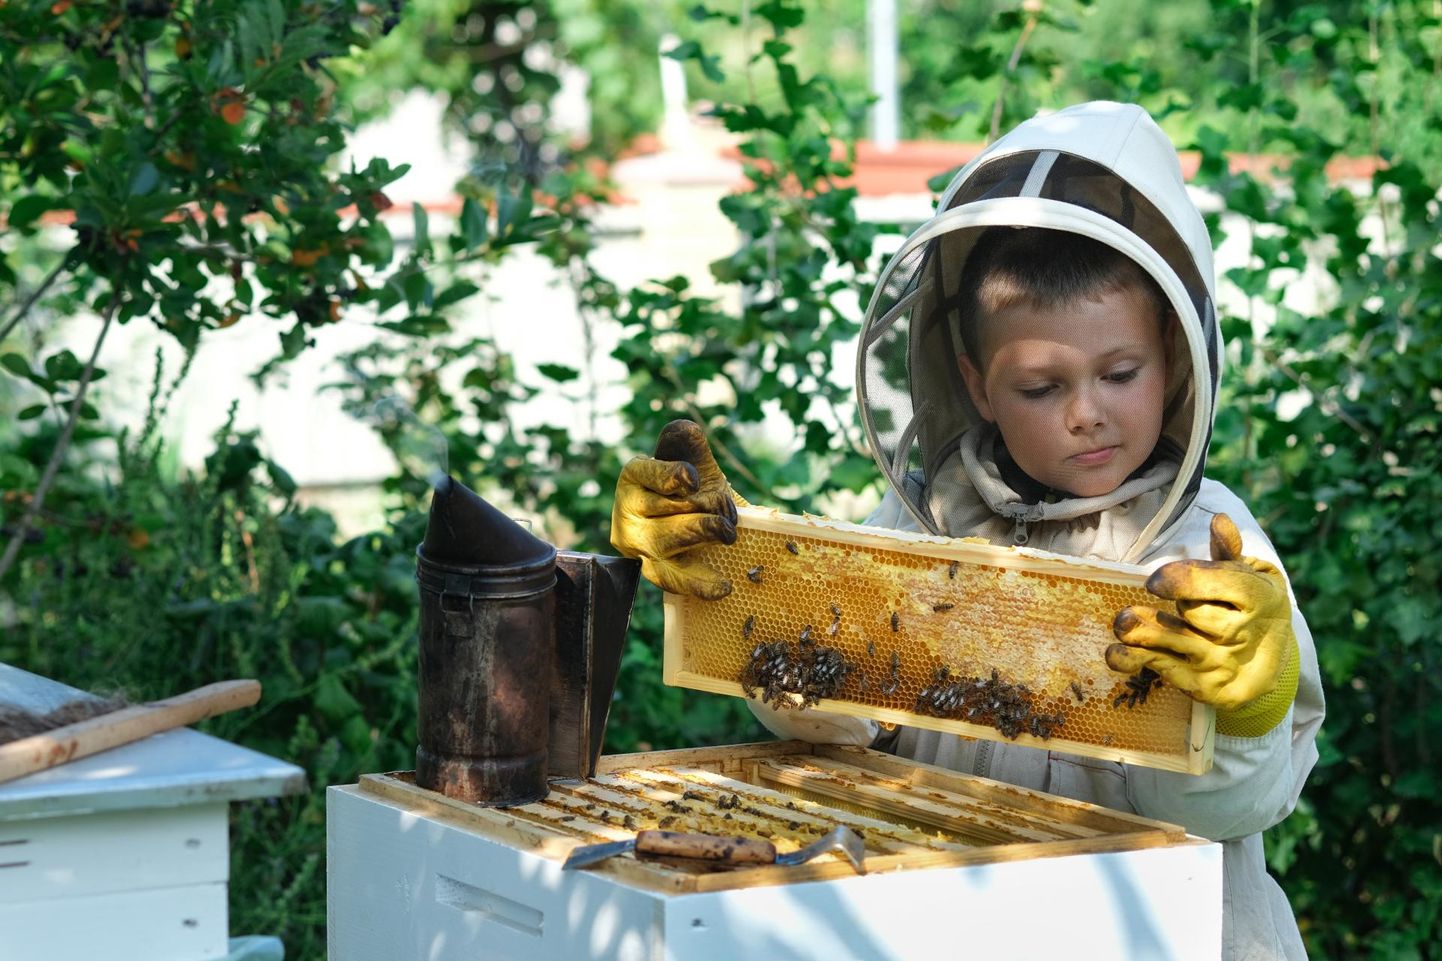 Lisaks mesindussektori murede lahendamisele plaanib Eesti Mesinduskogu teha tööd selle nimel, et tutvustada mesindust rohkem ka lastele, et nad oskaksid hinnata mesindust ja Eesti mett.